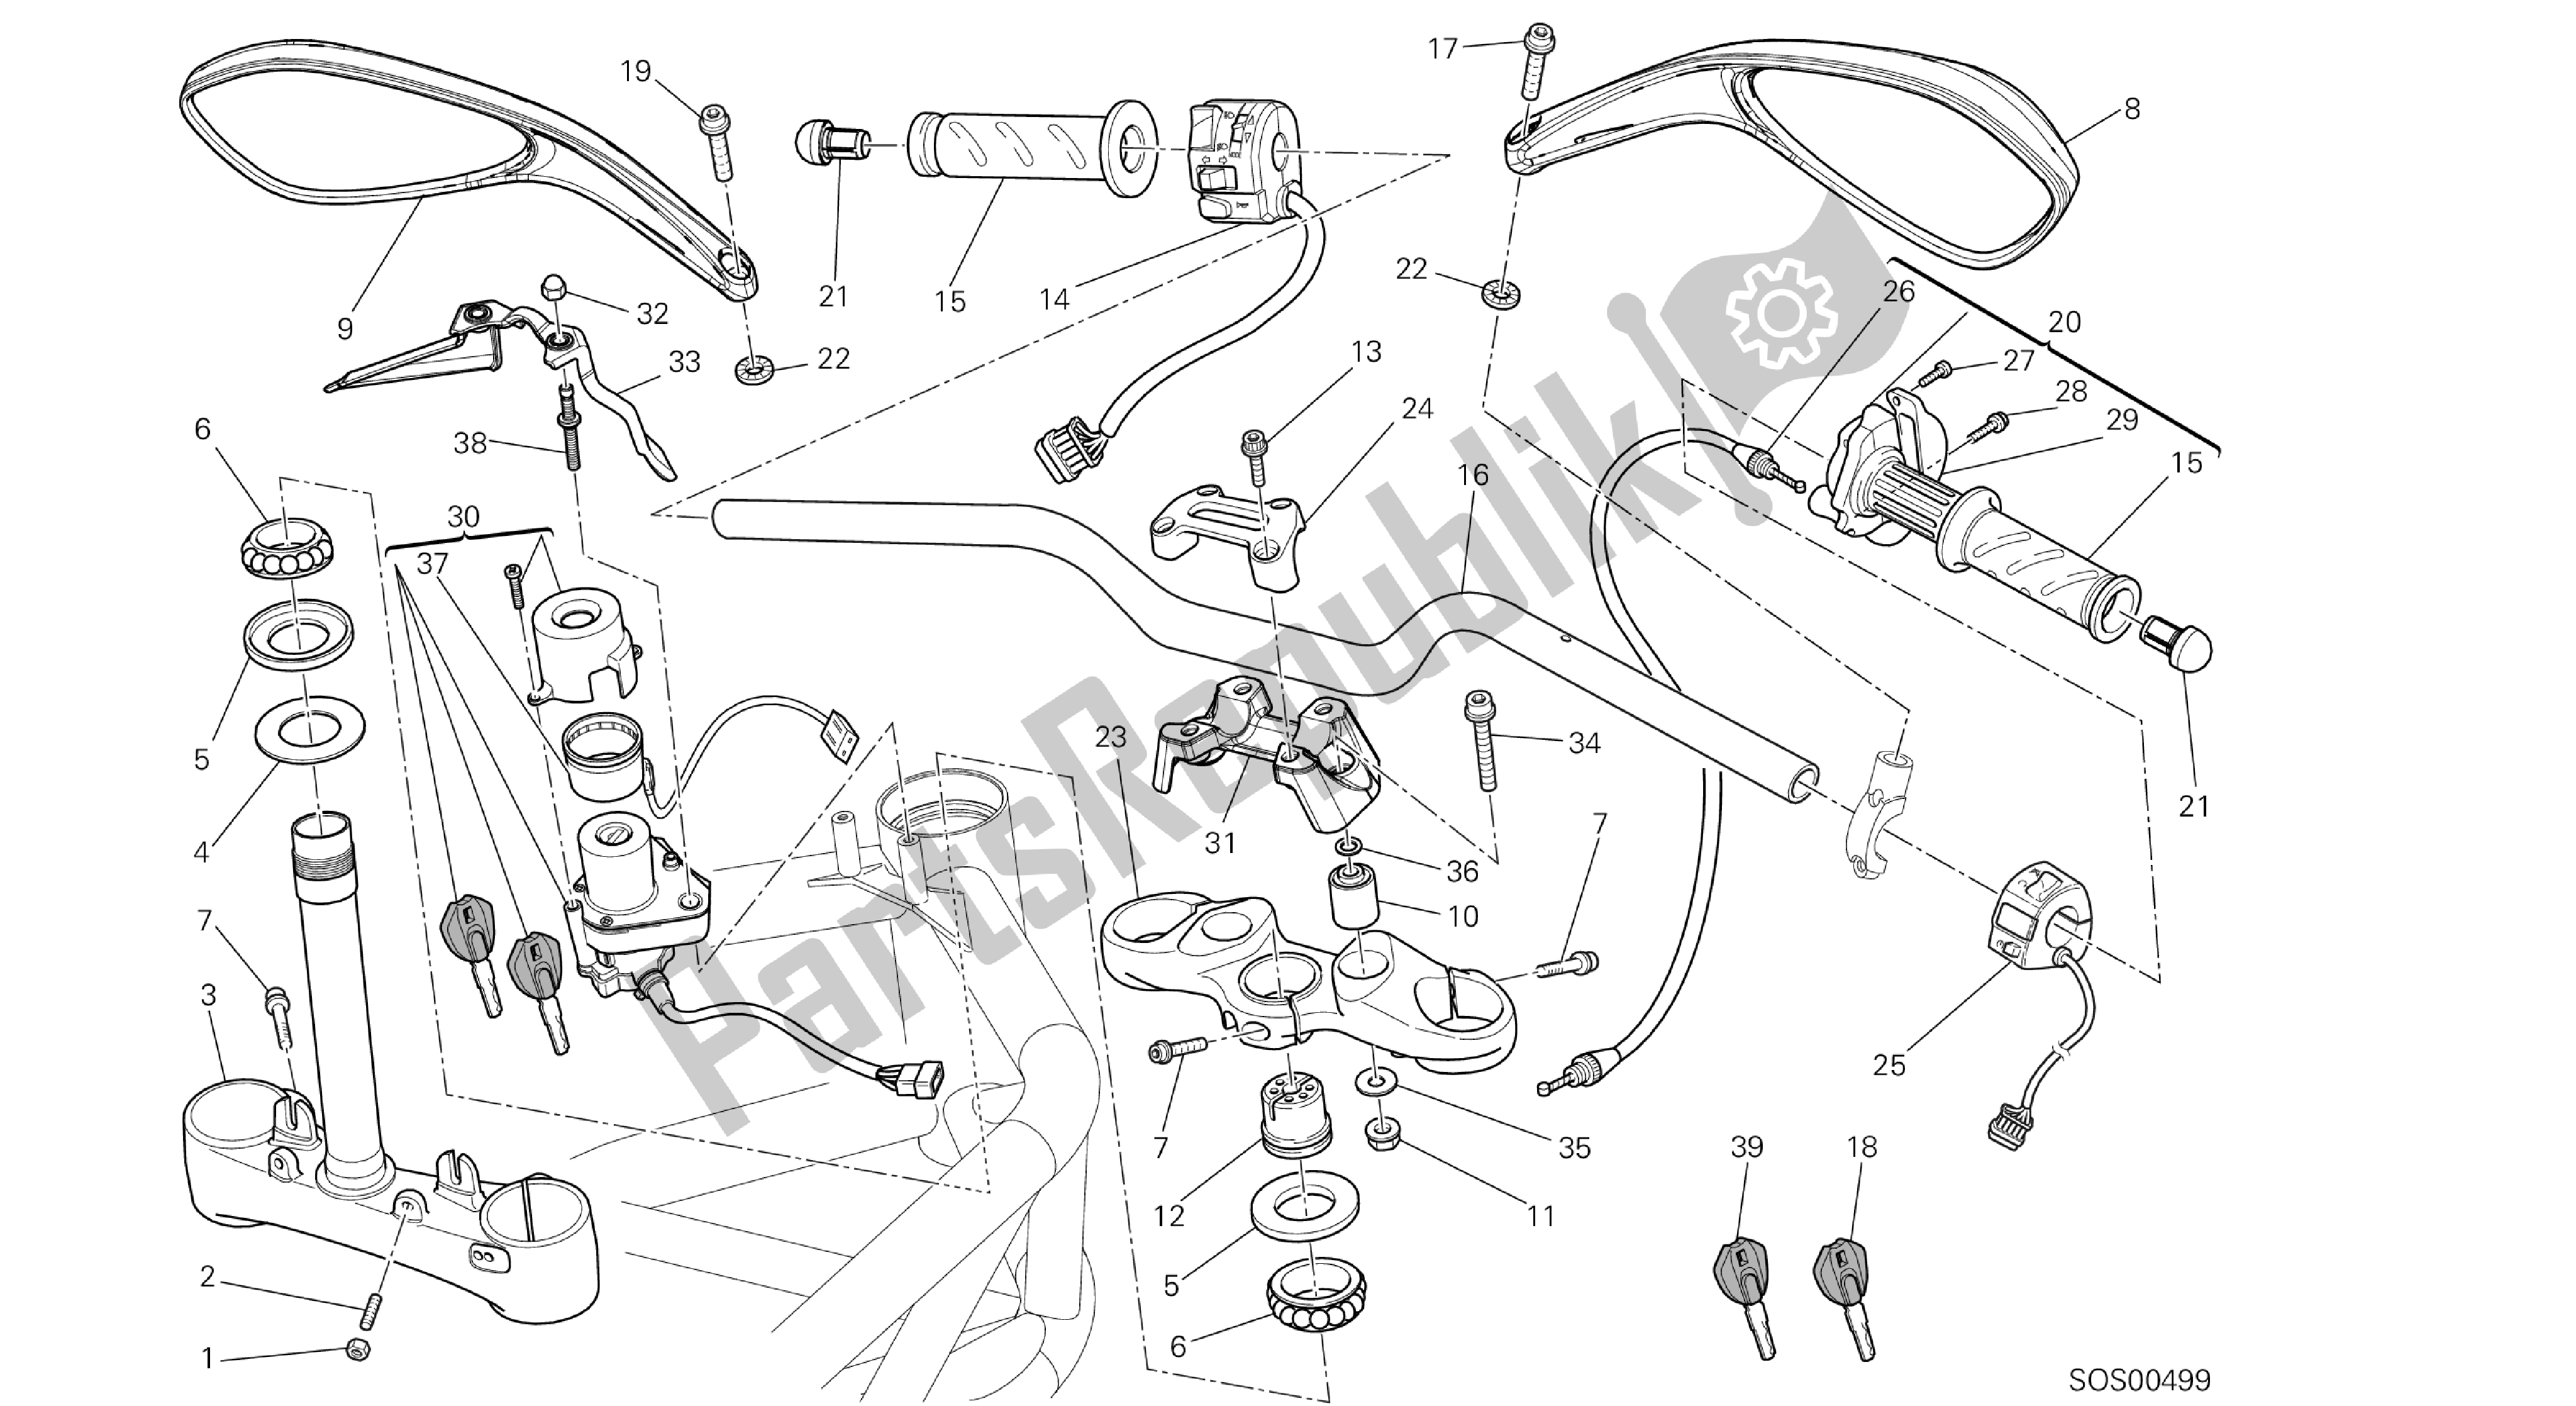 Todas las partes para Dibujo 026 - Handl Ebar [mod: M1100dsl; Xst: Aus, Chn, Eur, Jap] Grupo Fr Ame de Ducati Monster 1100 2013